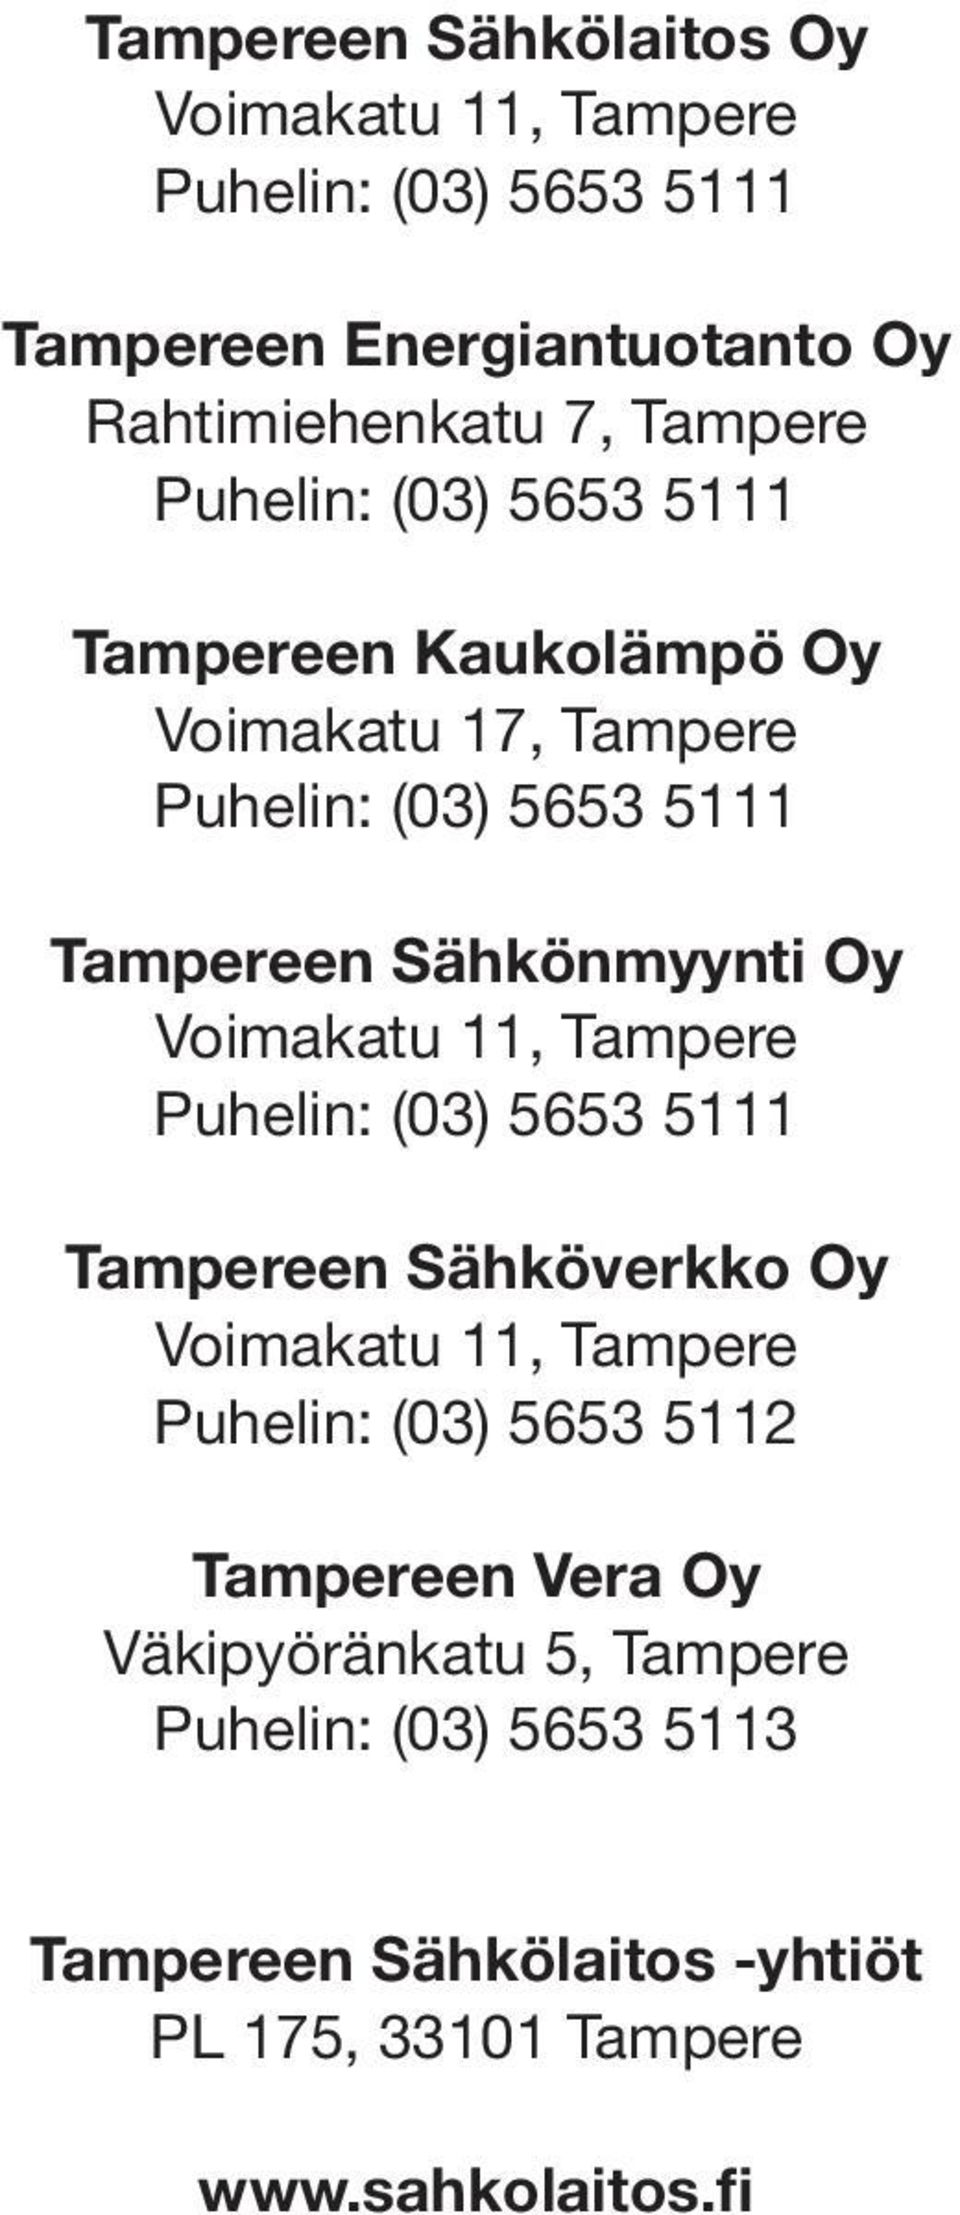 Voimakatu 11, Tampere Puhelin: (03) 5653 5111 Sähköverkko Oy Voimakatu 11, Tampere Puhelin: (03) 5653 5112